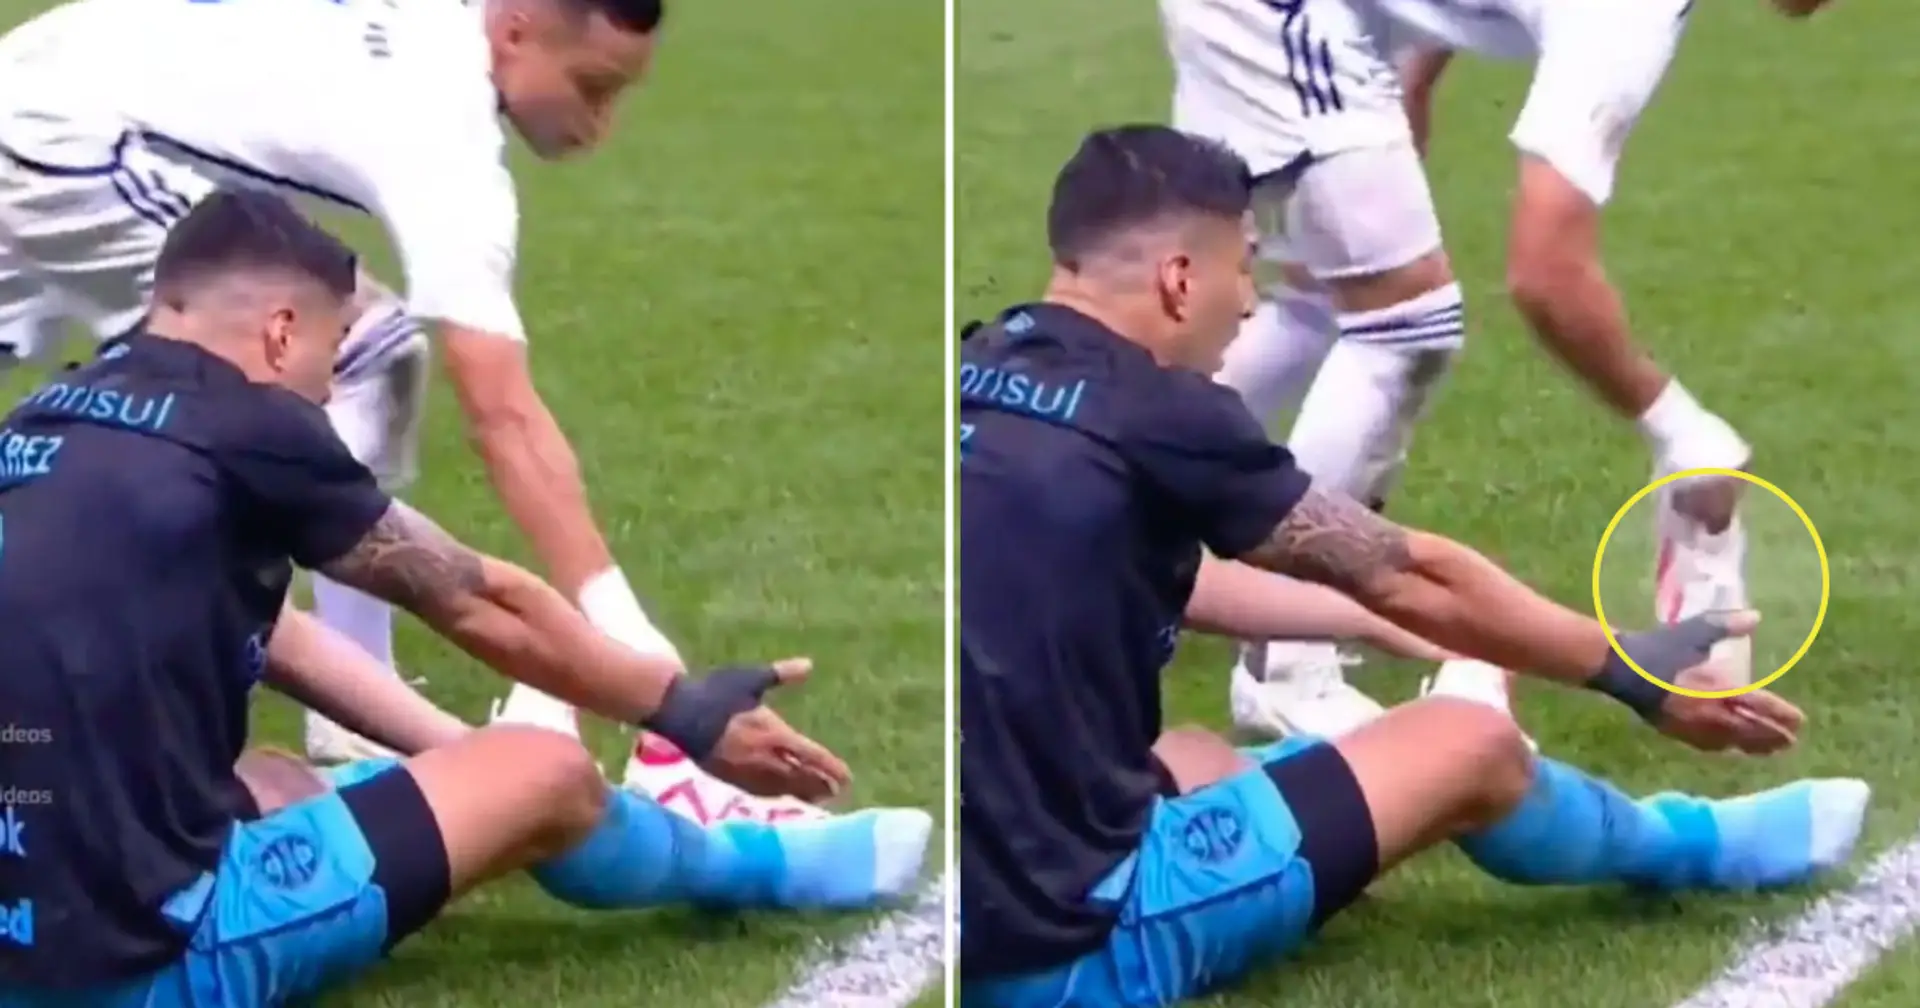 Luis Suarez est parti pieds nus alors que son rival lui a chippé sa chaussure, la réaction d'un joueur filmée